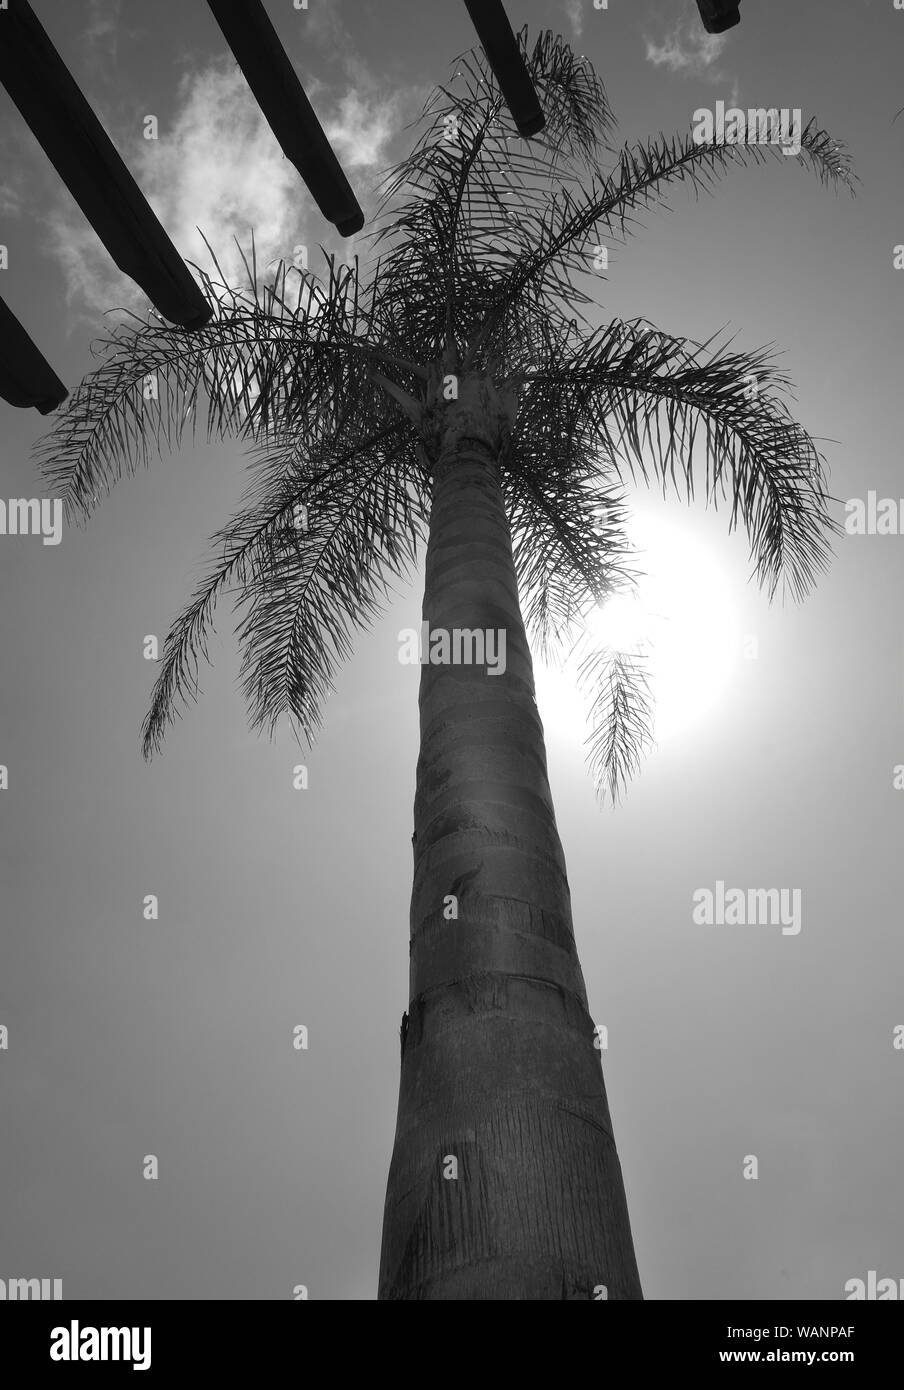 Palm Tree, bajo el punto de vista mirando hacia el tronco de la palmera hacia la parte superior del árbol y el cielo con el sol brillando detrás photog blanco y negro Foto de stock